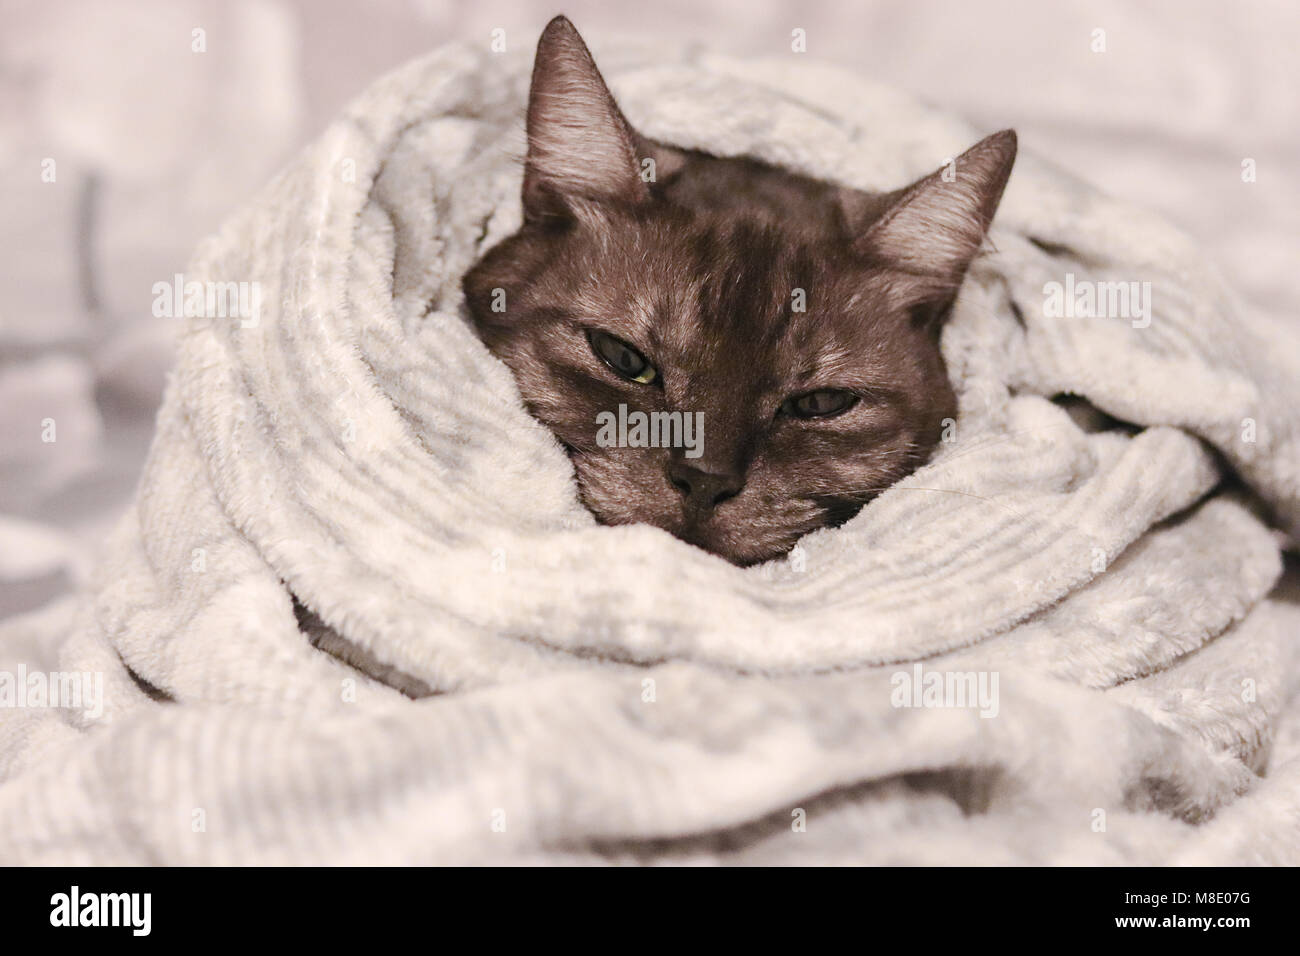 Zum Aufwärmen an kalten Tagen. Grau niedlich abgestreift Katze in eine weiche warme Decke eingewickelt. Stockfoto